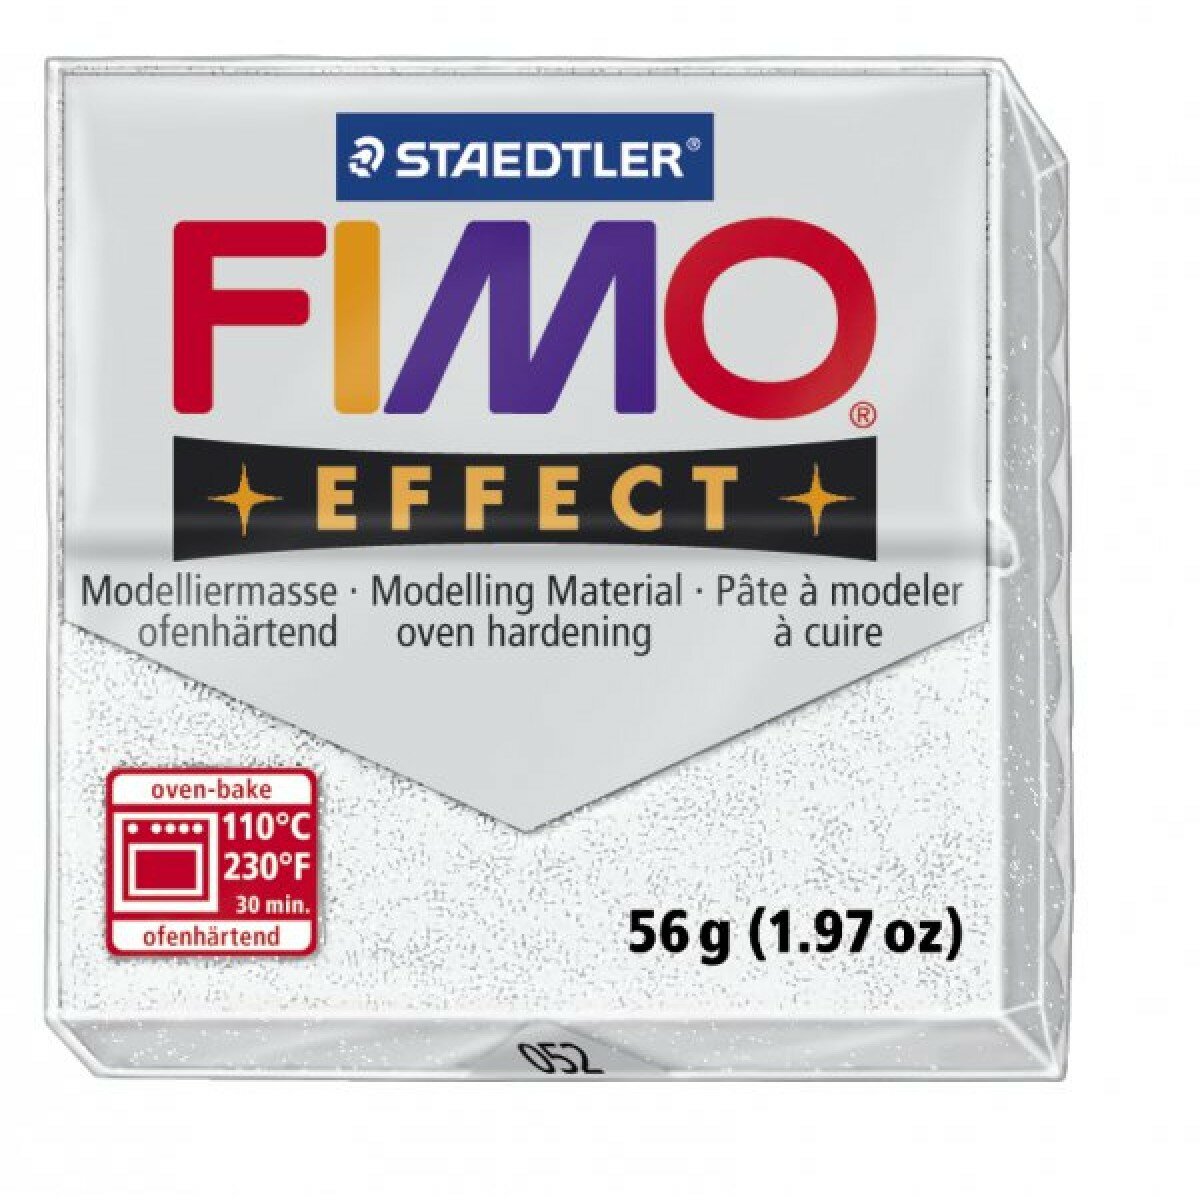 FIMO Effect полимерная глина, запекаемая в печке, уп. 56г цв. белый с блестками, 8020-052